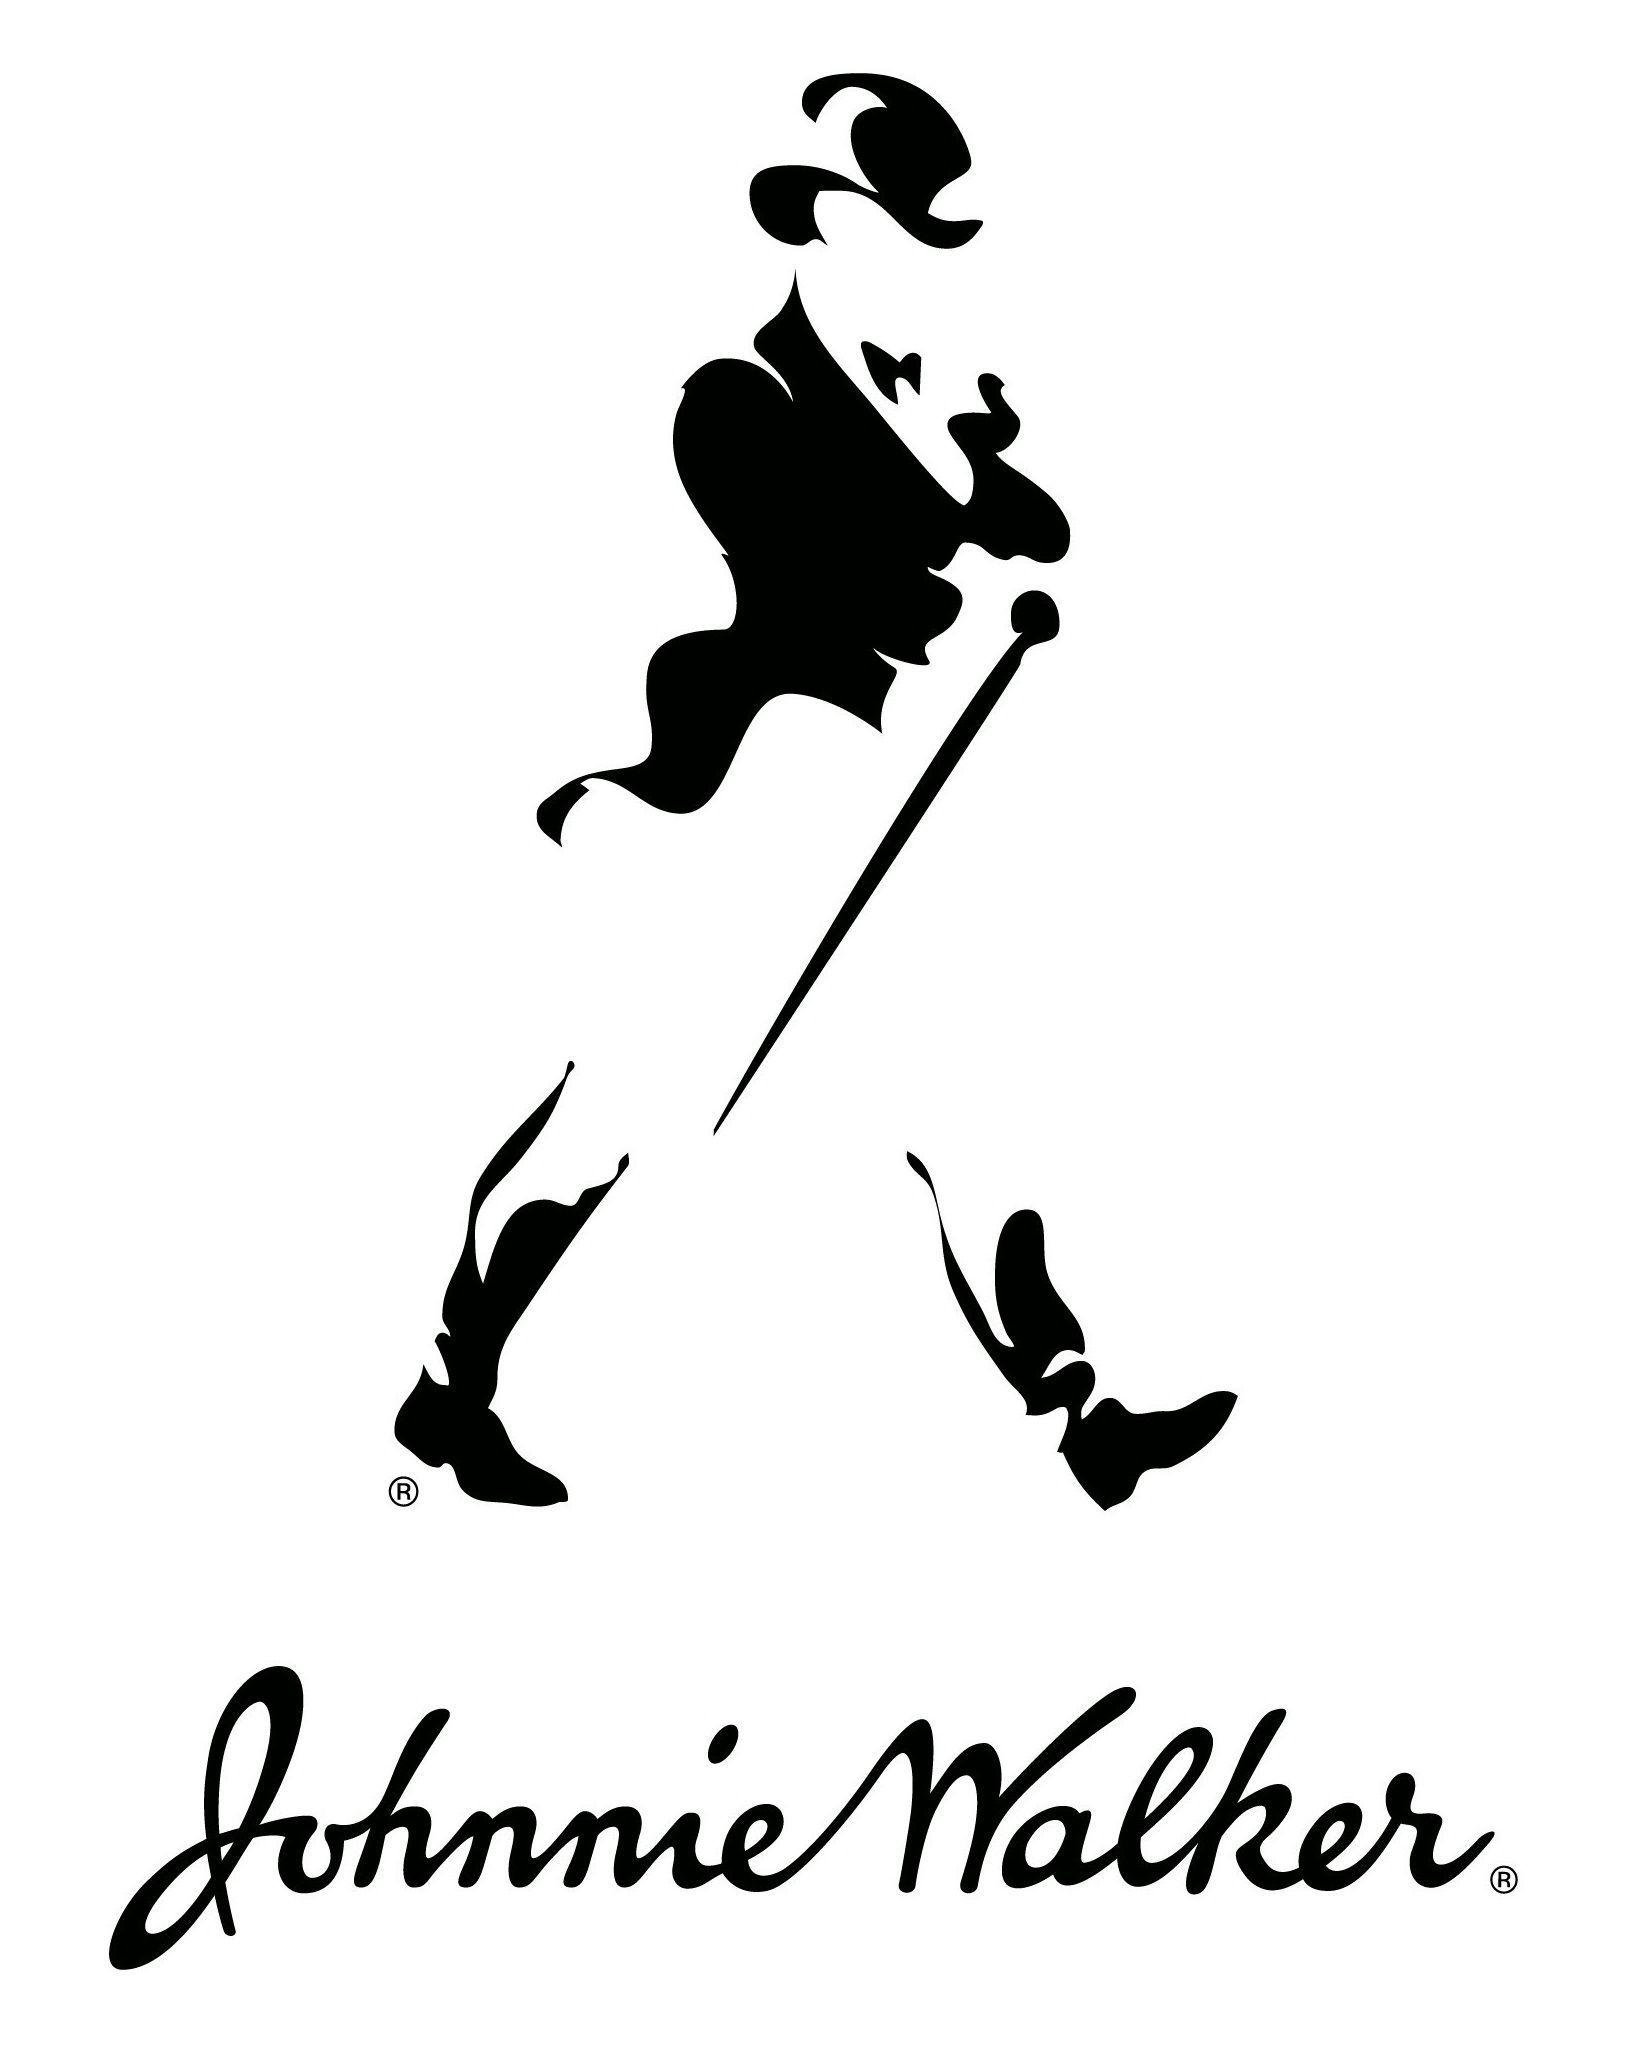 Walking Logo - Johnnie Walker Logo | Logos in 2019 | Pinterest | Walker logo ...